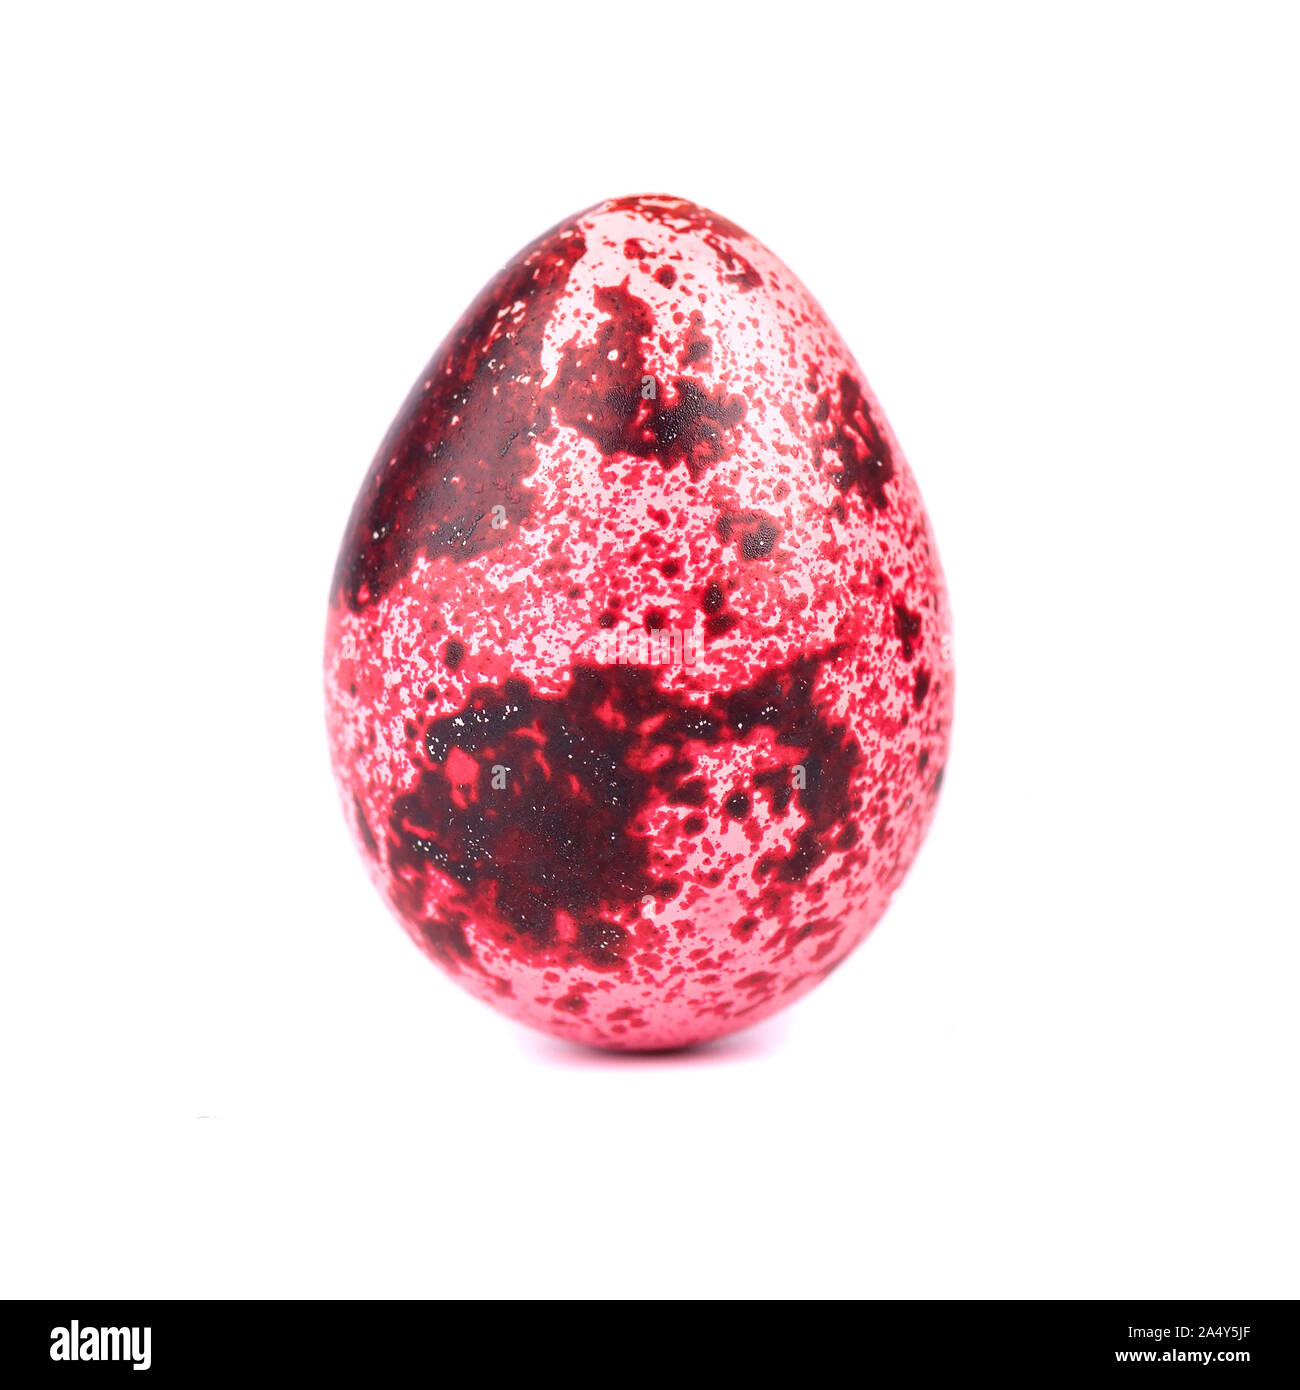 Quaglia uovo di pasqua di colore rosa, isolato su sfondo bianco. Concetto di pasqua. Macro Foto Stock